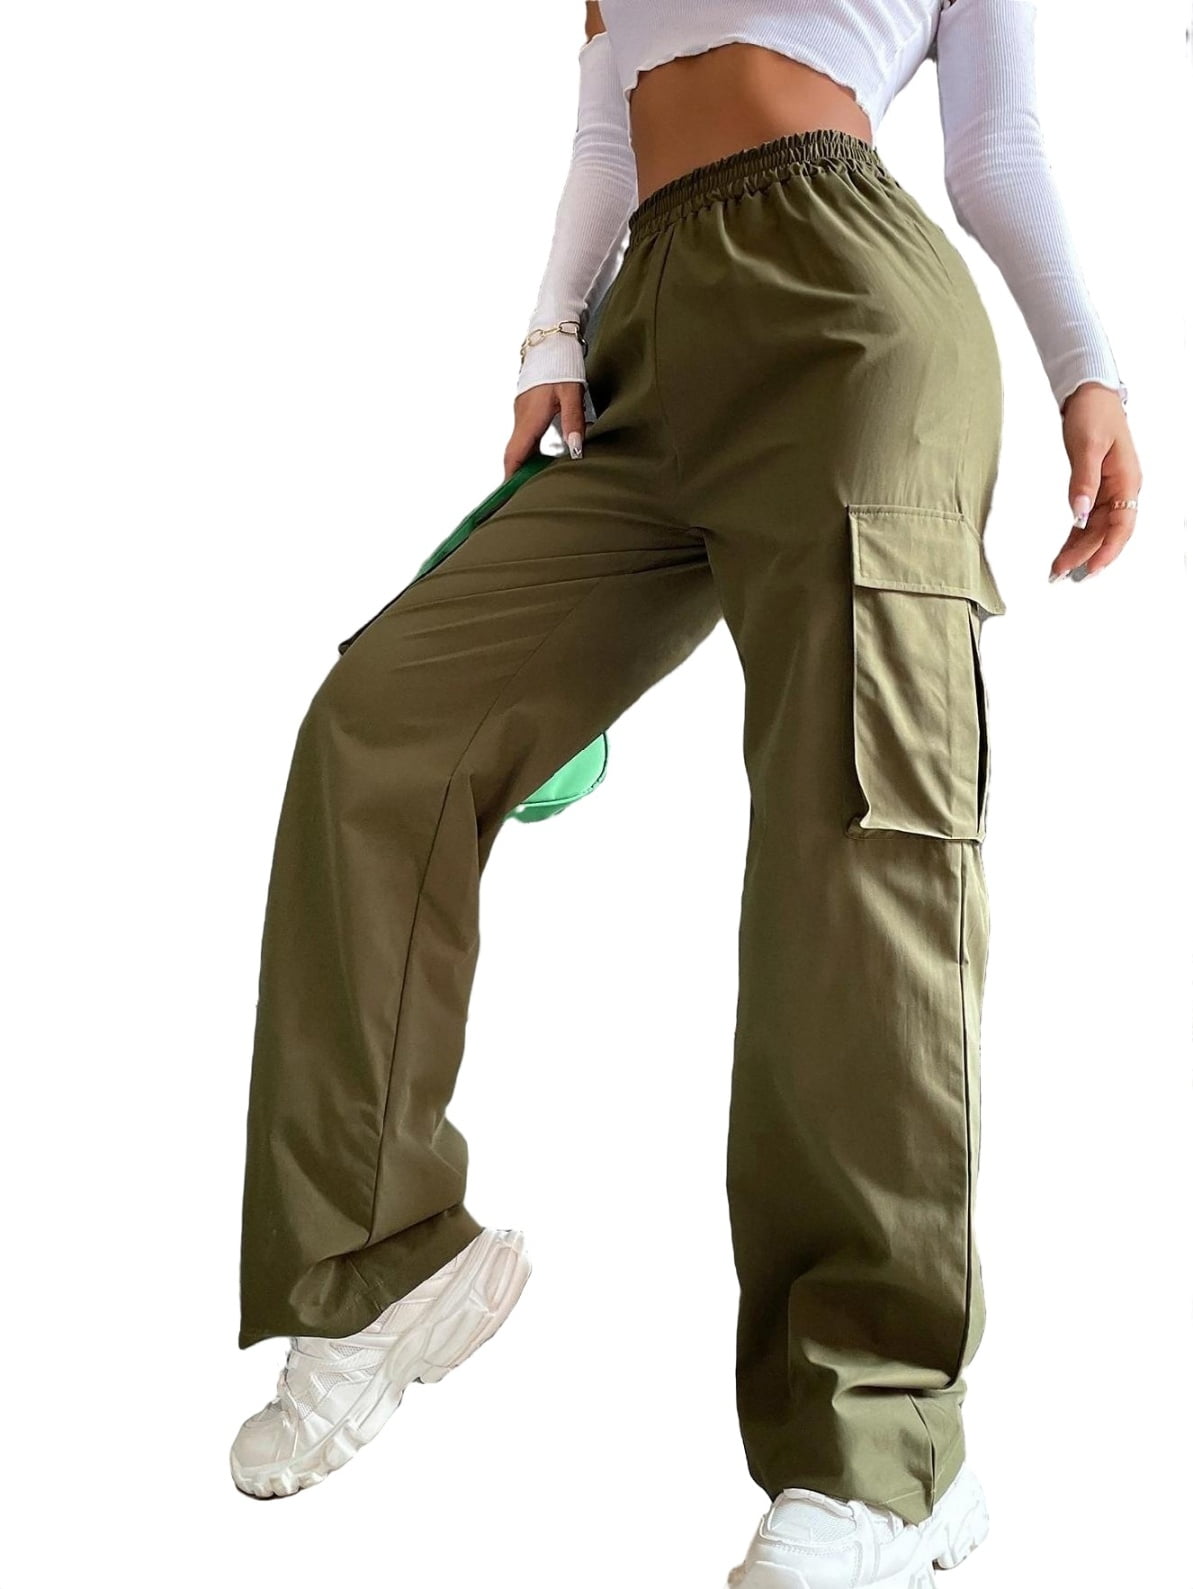 Women's Elastic High Waist Flap Pocket Cargo Pants Grey 